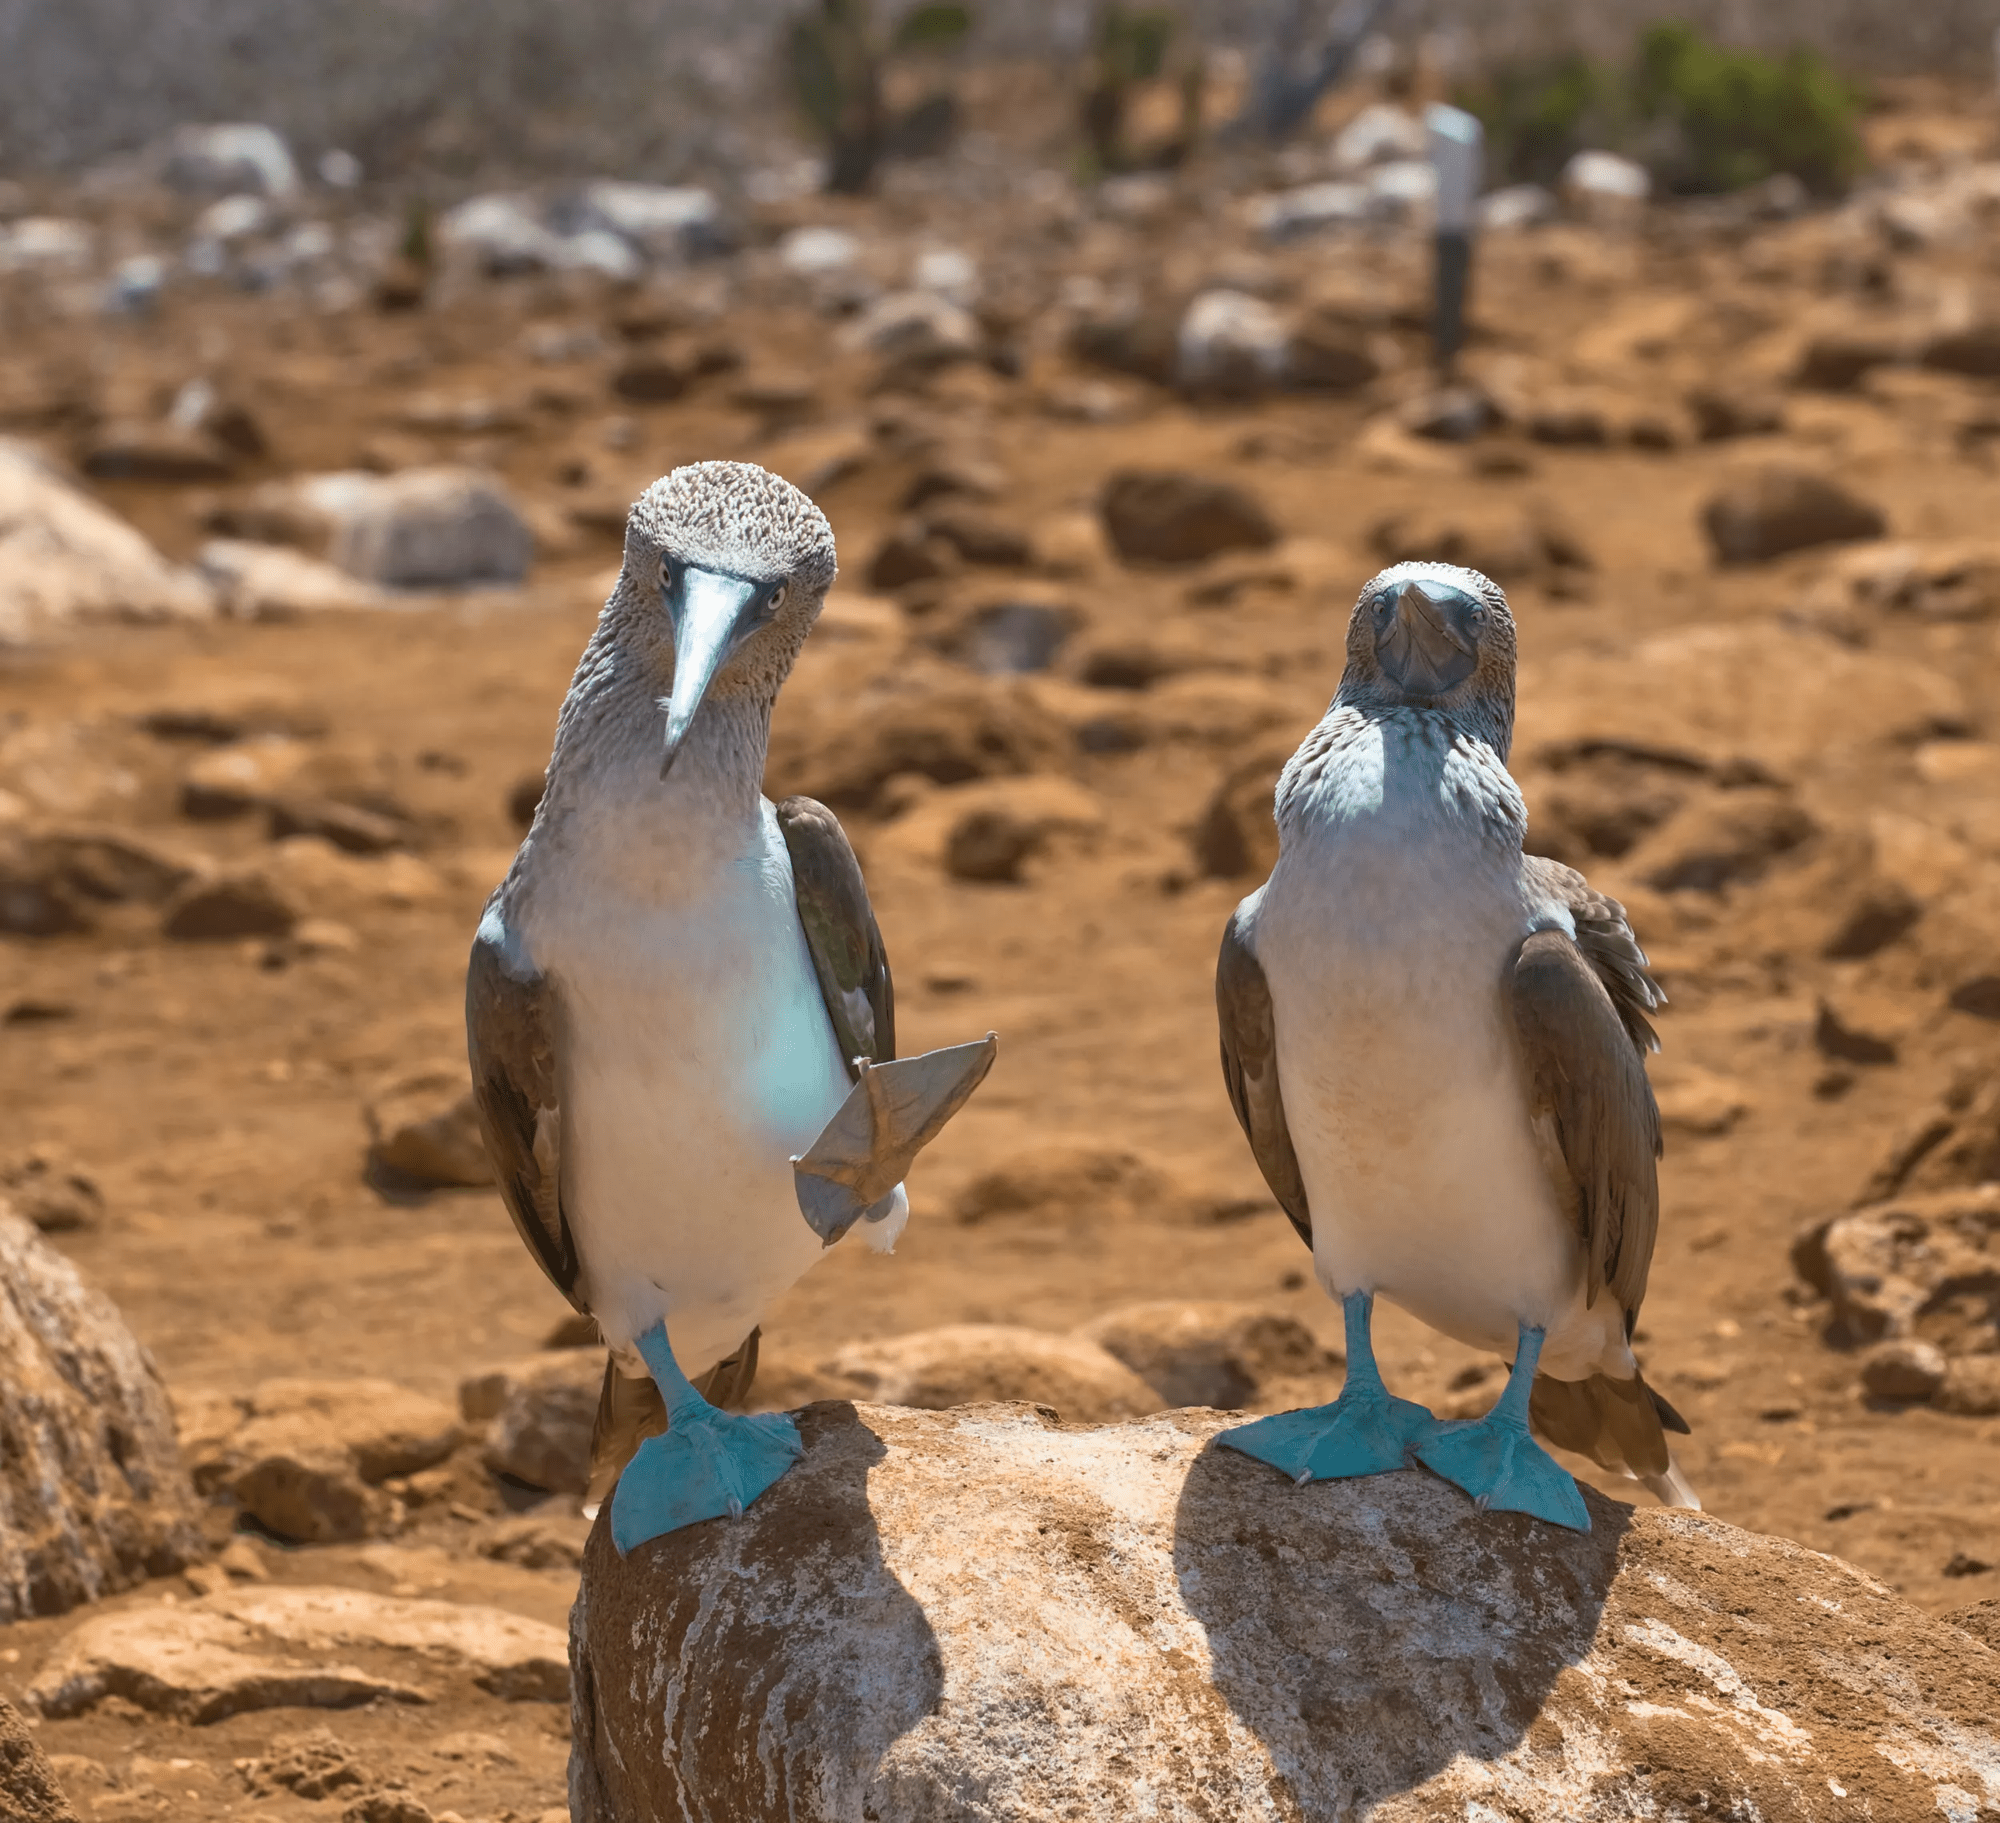 18-daagse privérondreis Ecuador & Galapagos Eilandhoppen